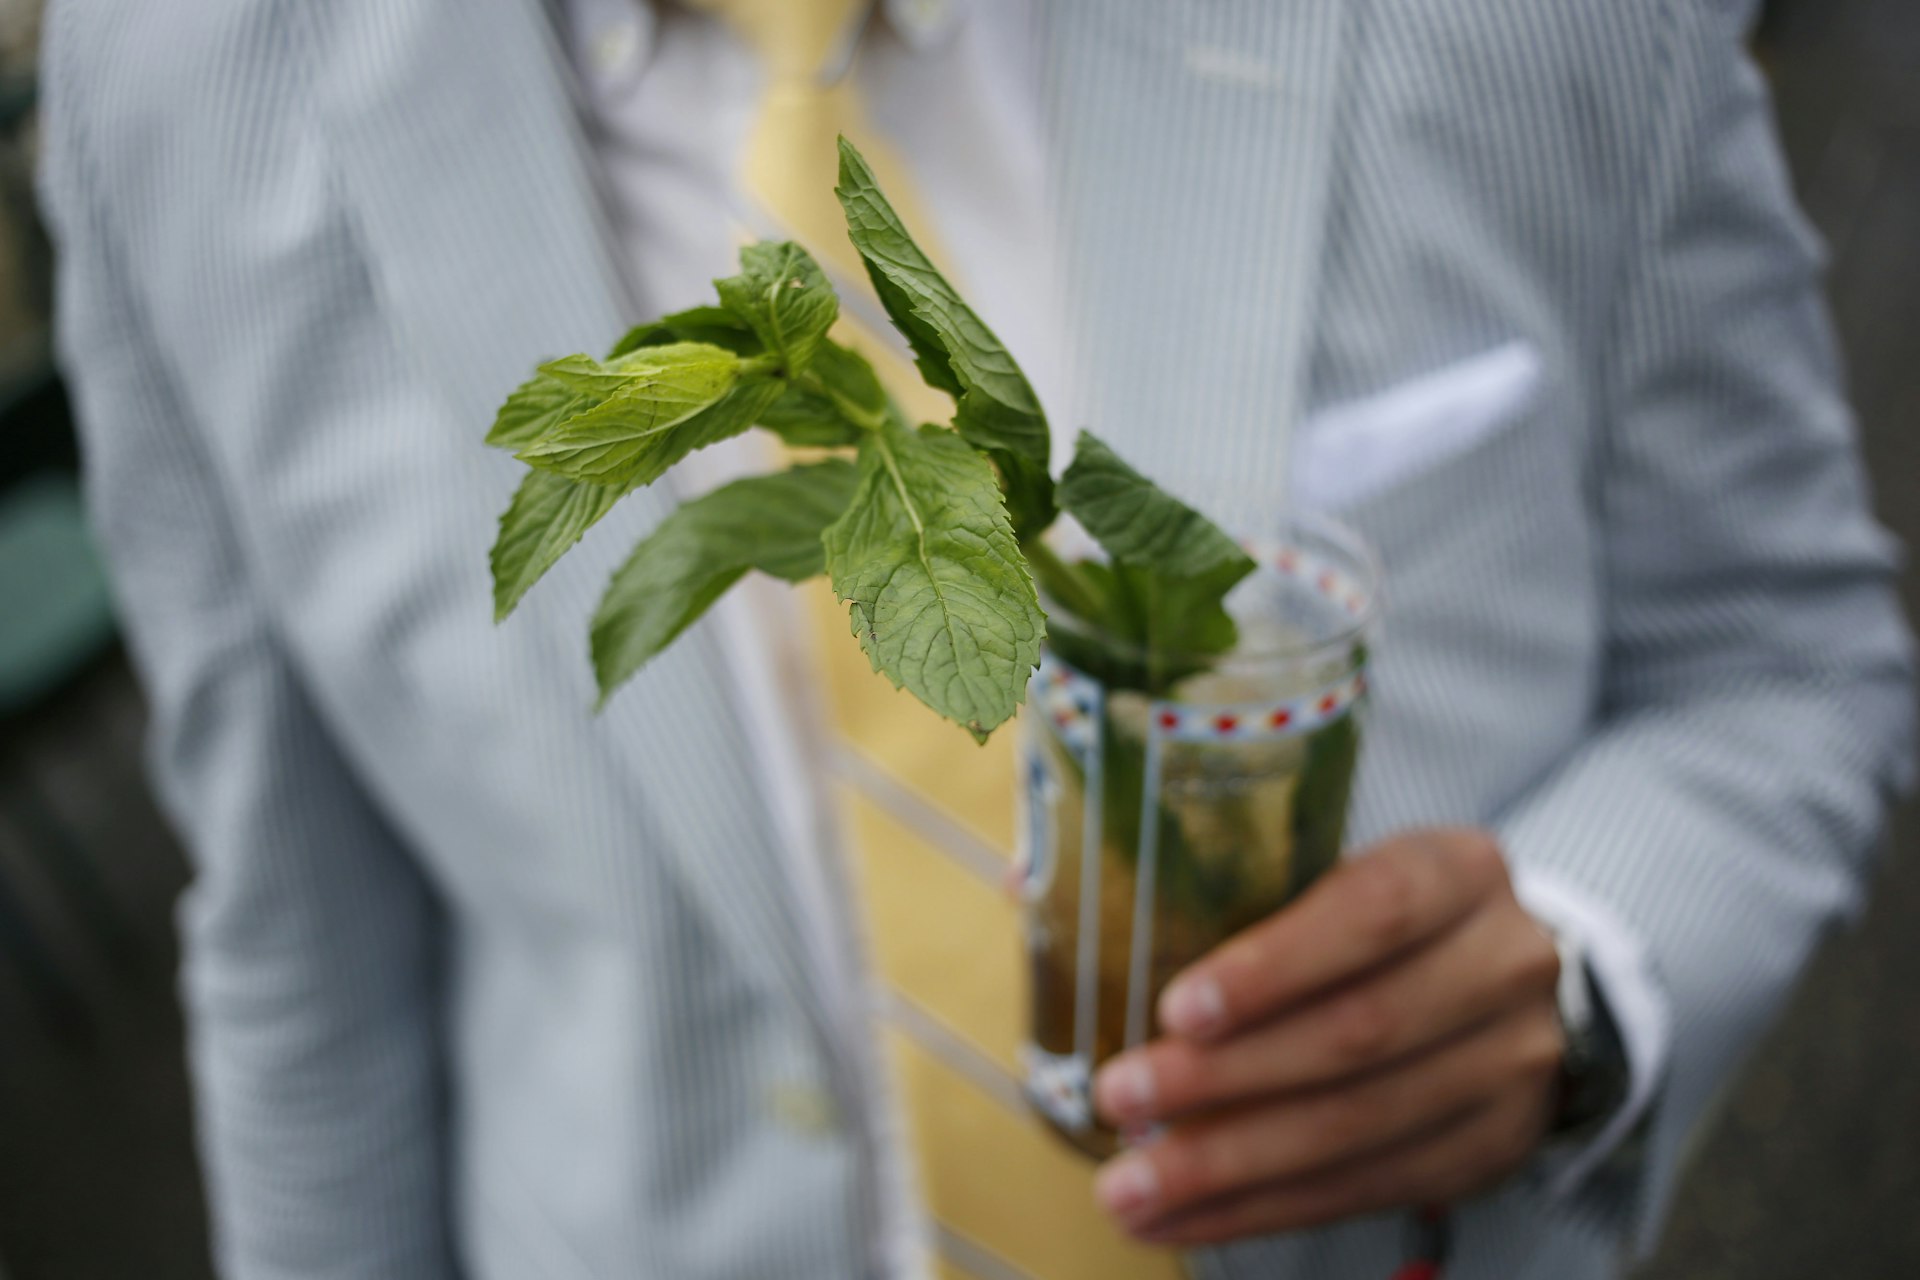 A racegoer holds a mint julep cocktail